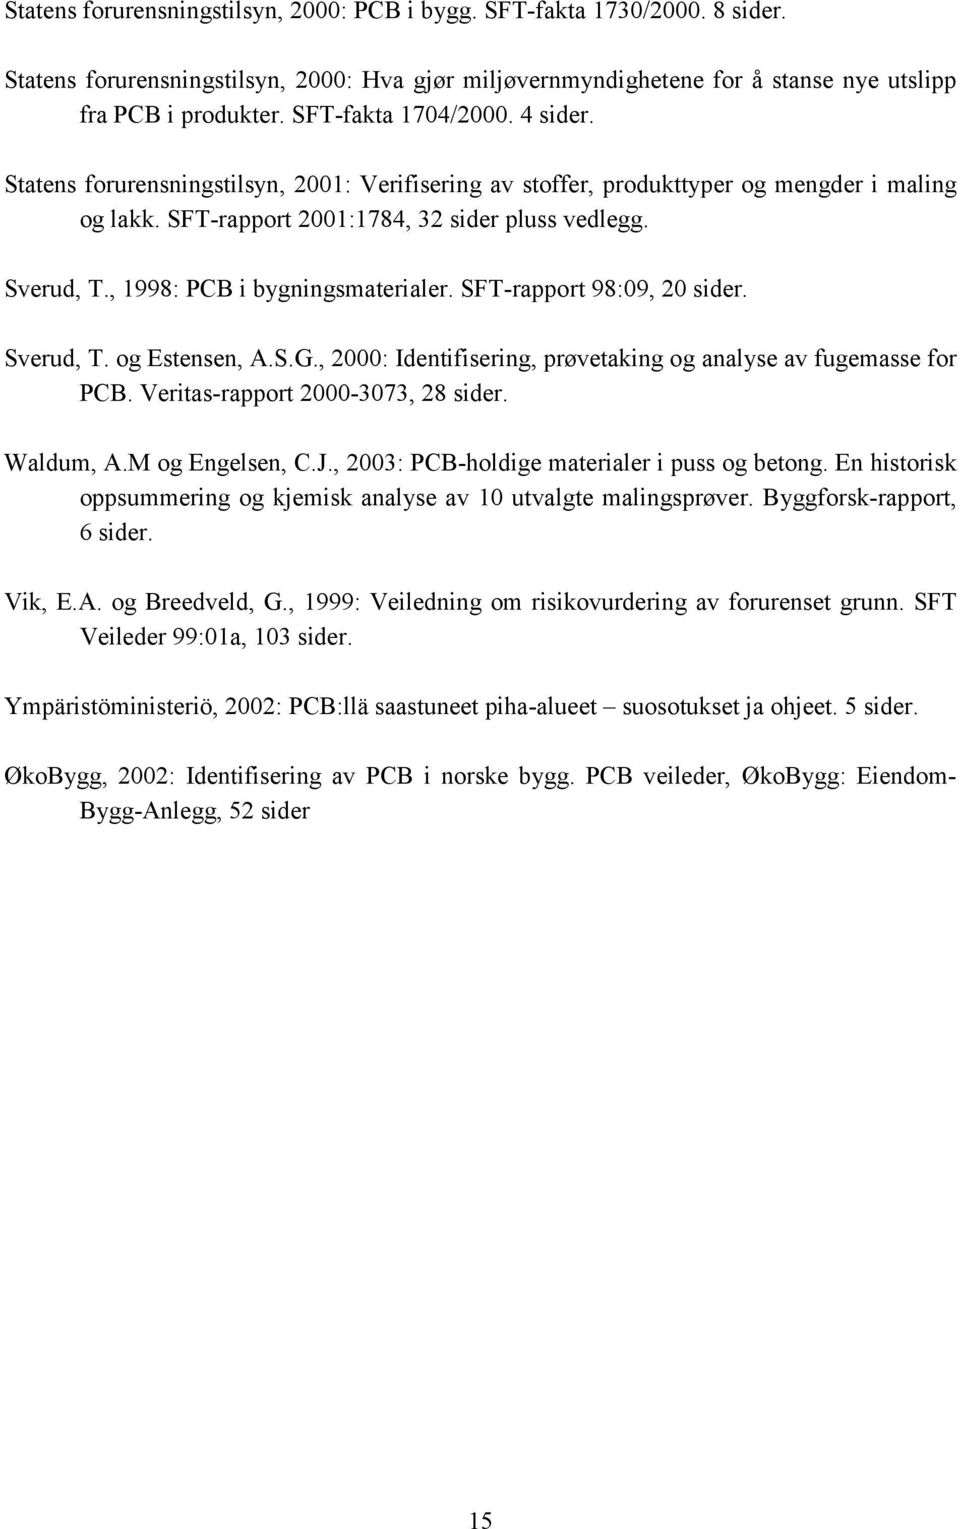 , 1998: PCB i bygningsmaterialer. SFT-rapport 98:09, 20 sider. Sverud, T. og Estensen, A.S.G., 2000: Identifisering, prøvetaking og analyse av fugemasse for PCB. Veritas-rapport 2000-3073, 28 sider.